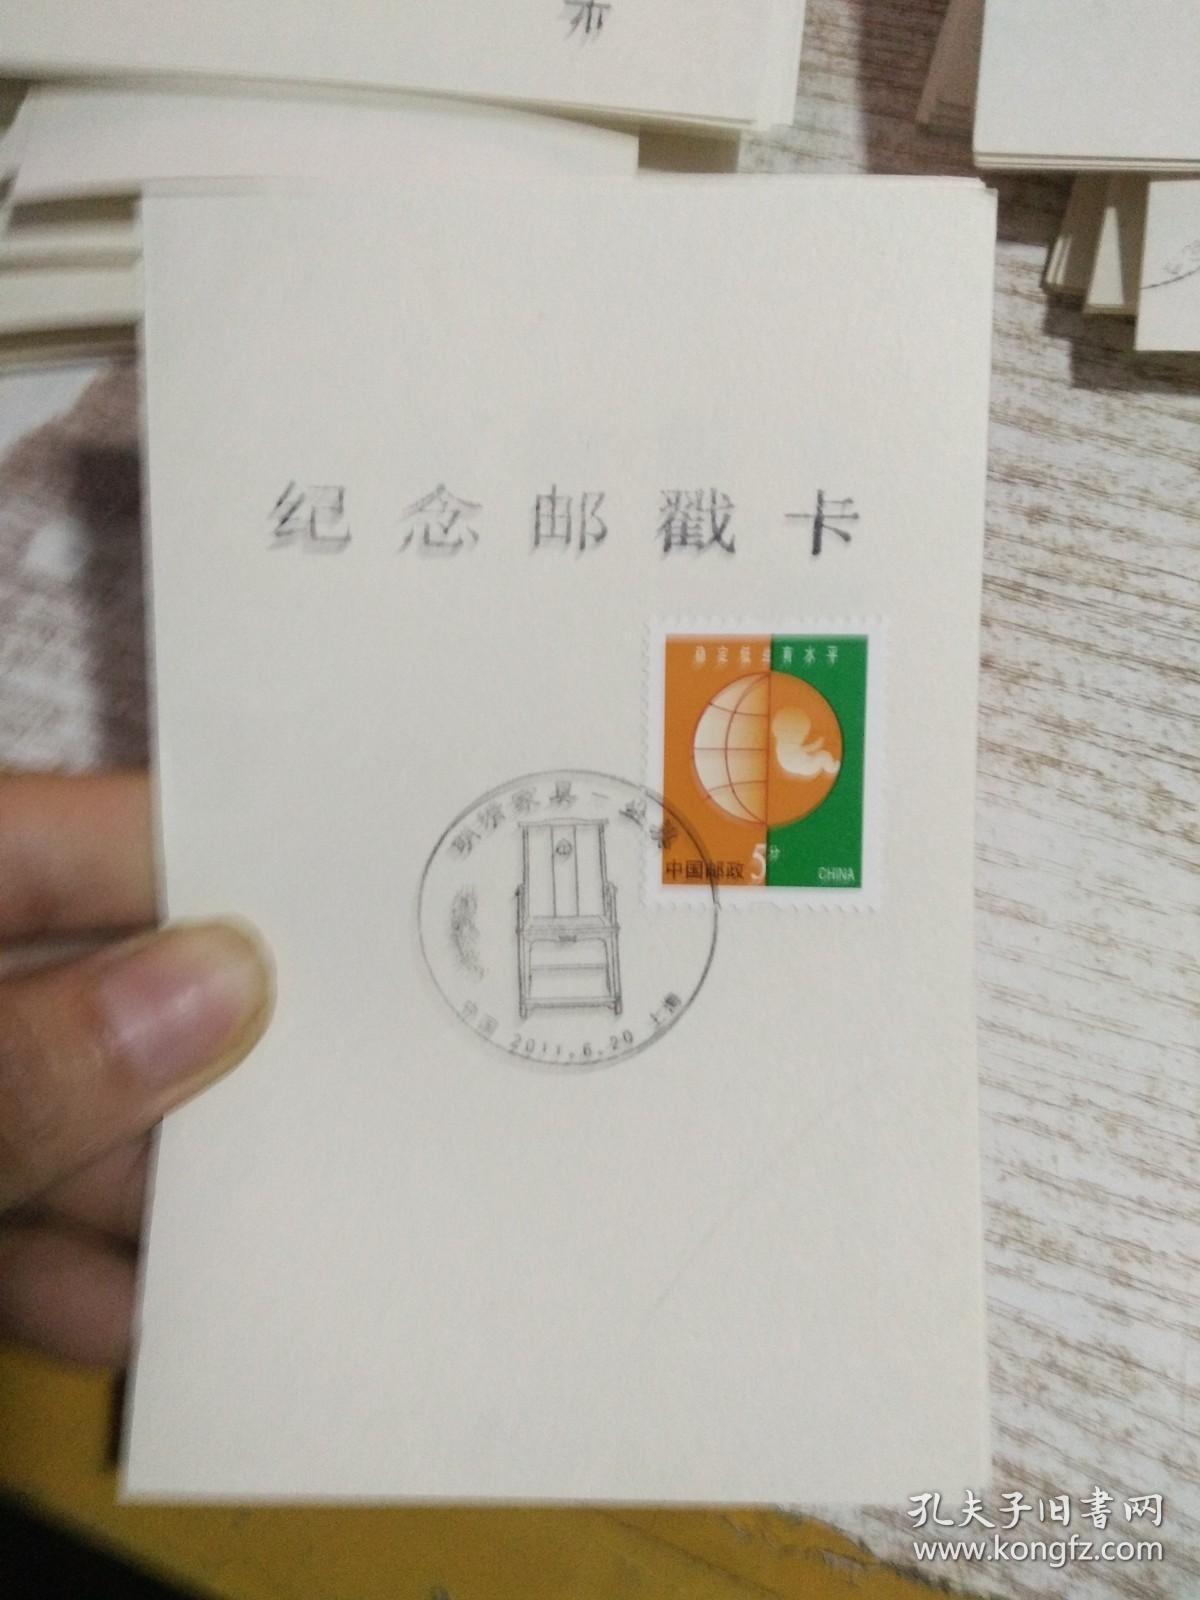 纪念邮戳卡 明清家具——坐具 有邮票 具体看图